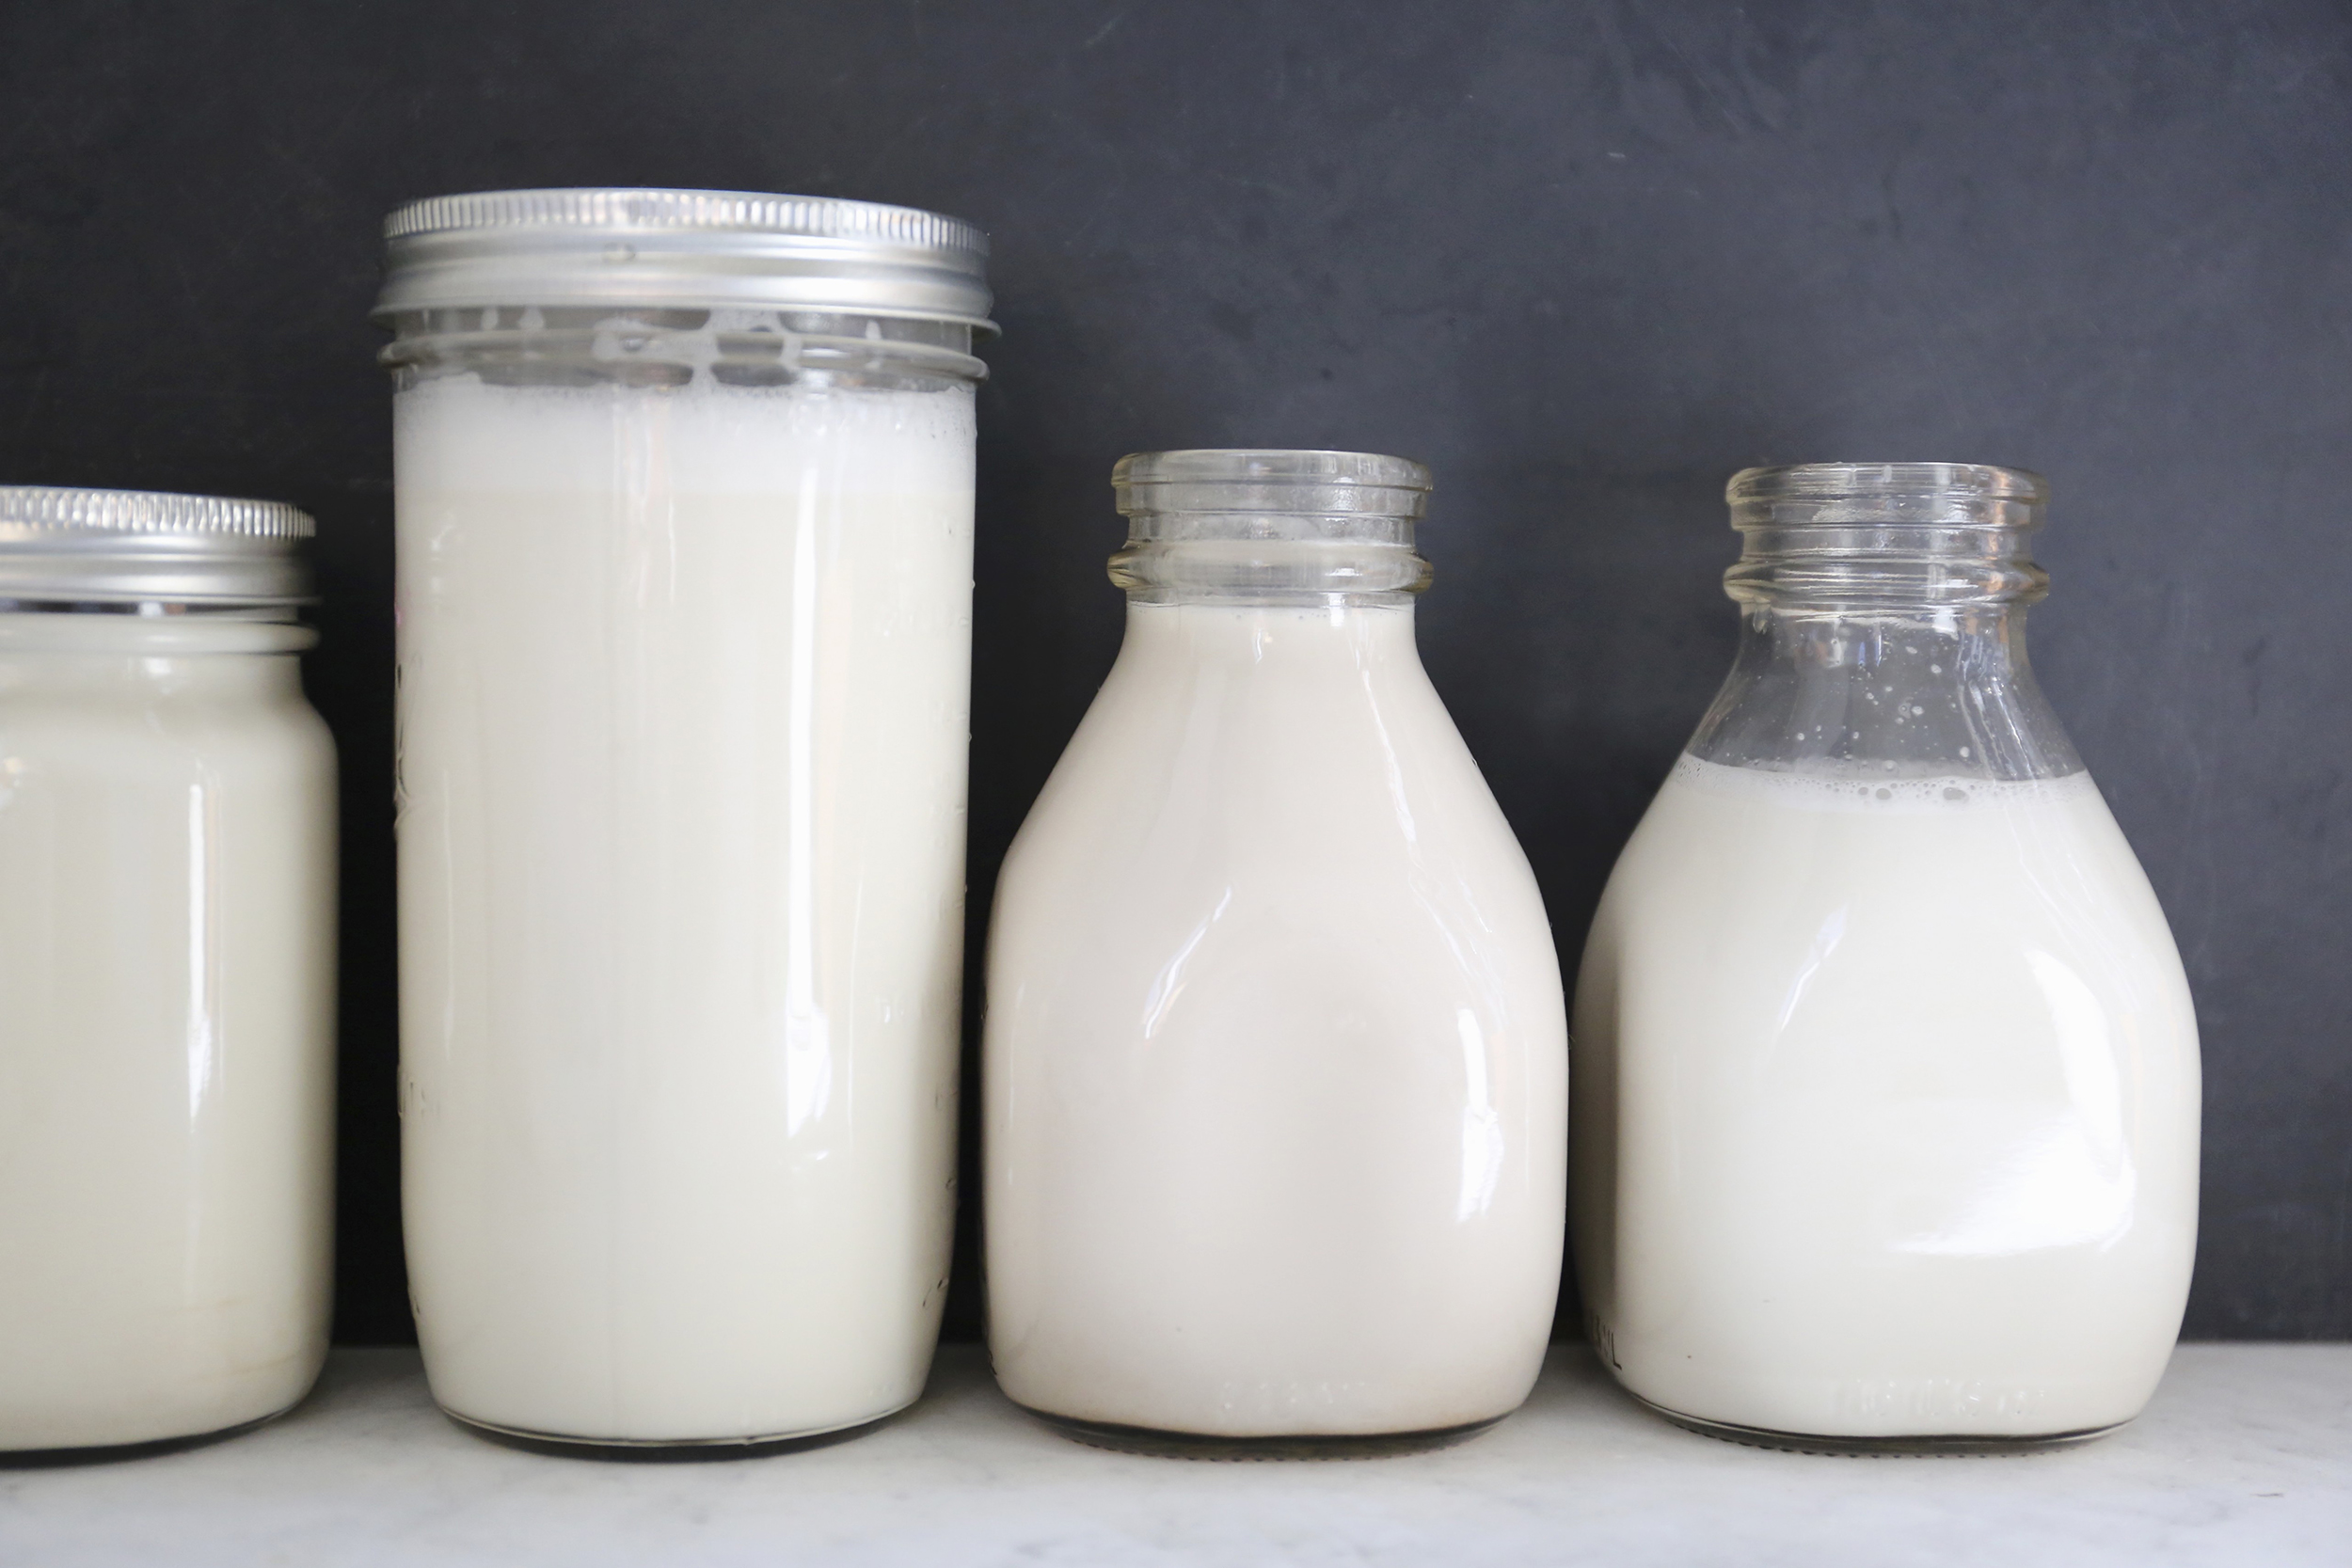 Chăm sóc trẻ bất dung nạp lactose – Hỏi đáp ngắn